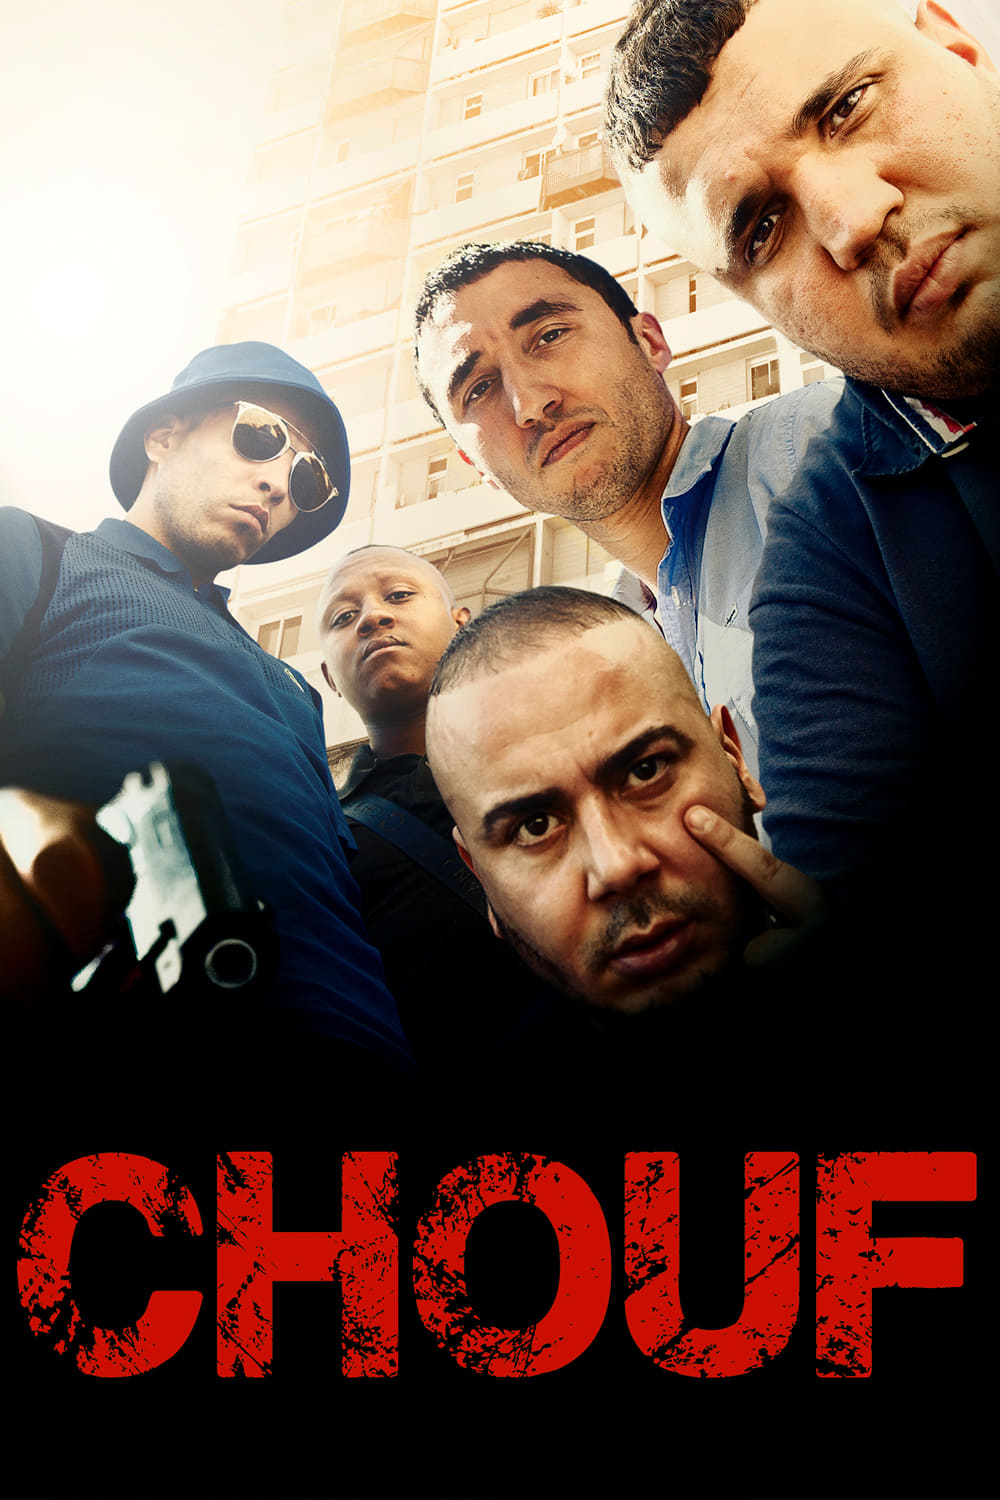 Chouf (2016)